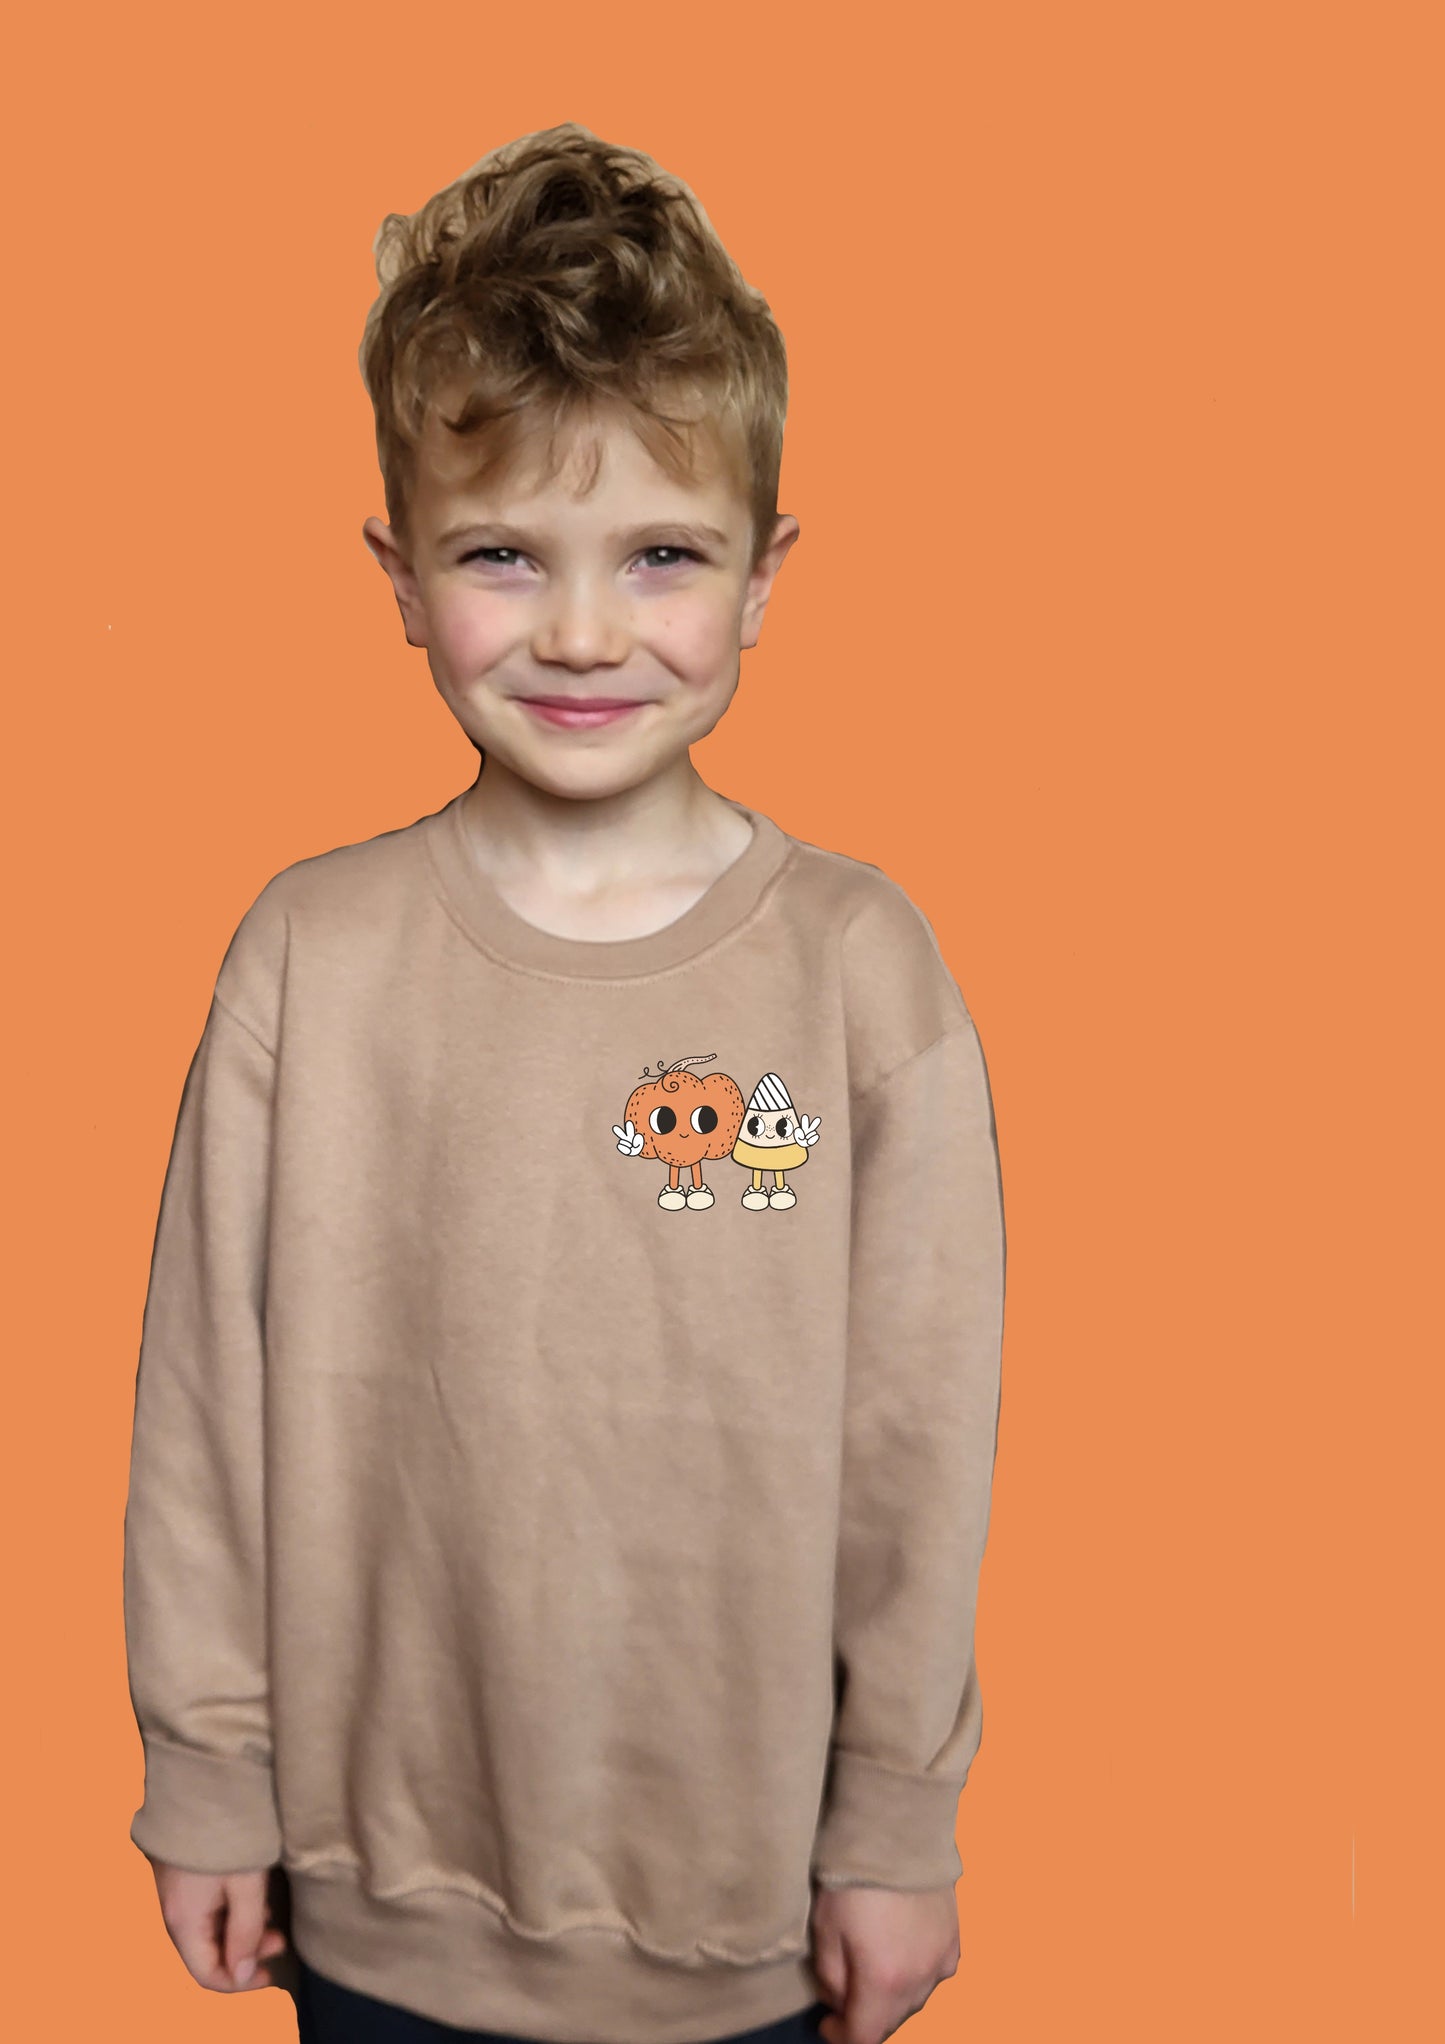 Trick-or-treat design 3 KIDS Sweatshirt Halloween